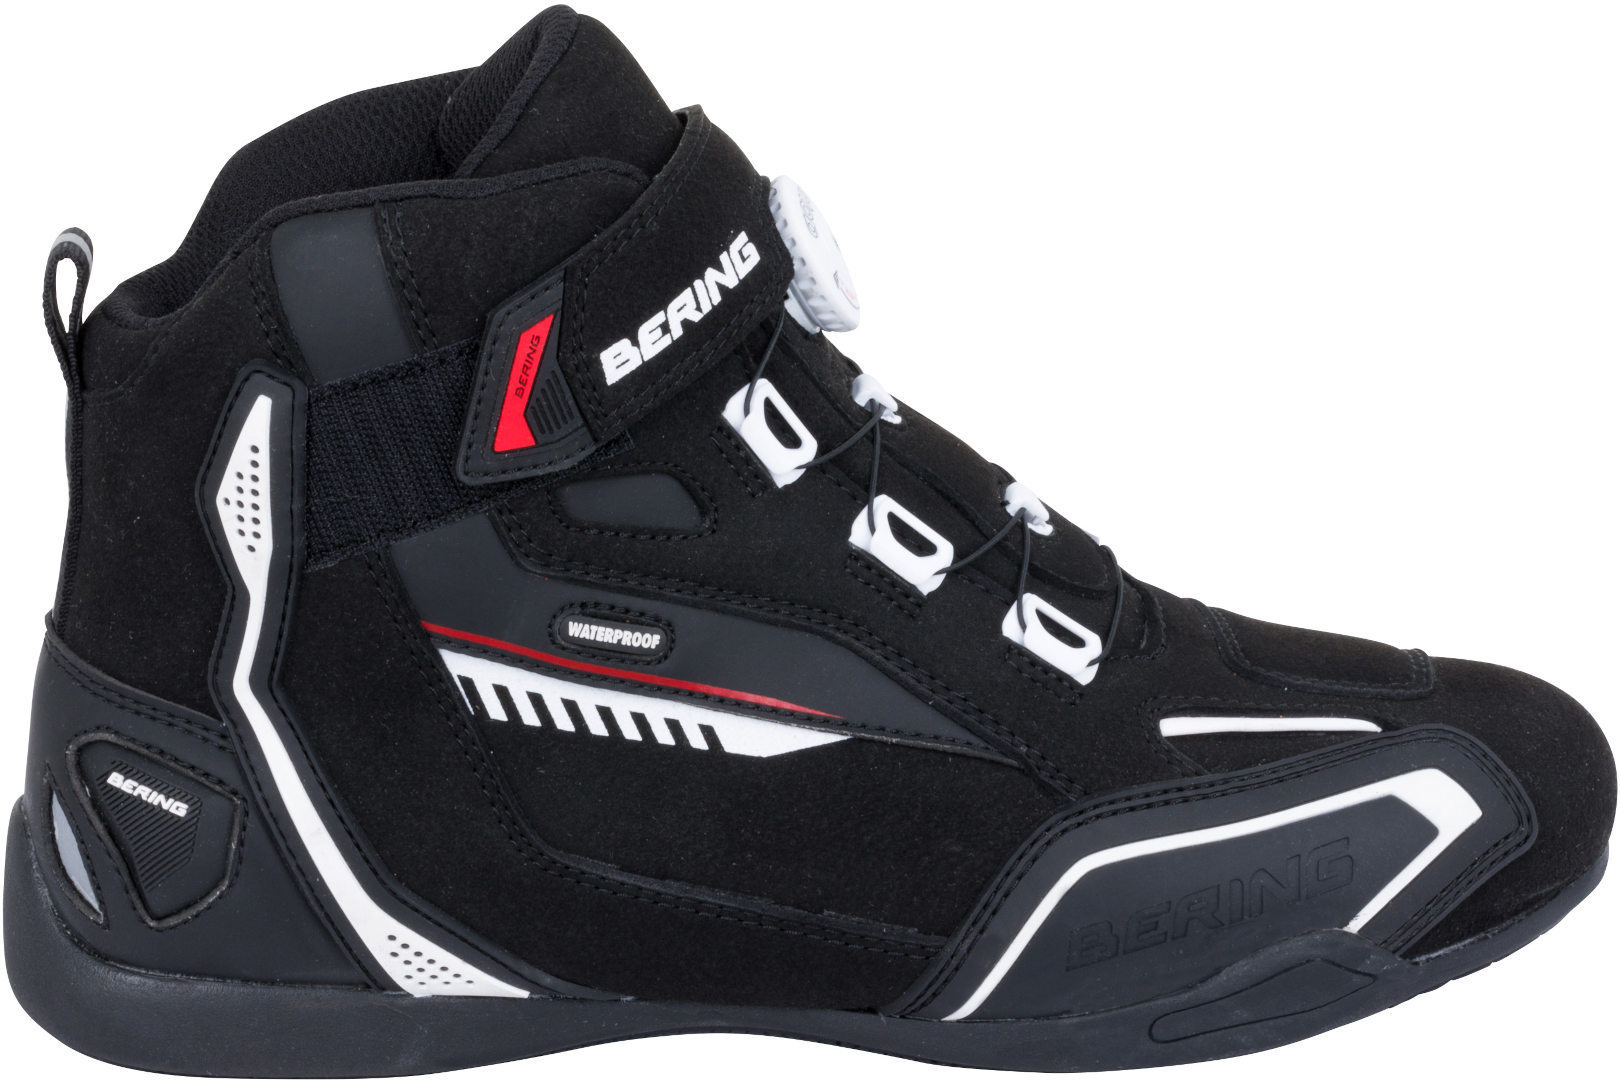 Bering Walter Waterproof Motorcycle Shoes, black-white-red, Size 40, black-white-red, Size 40